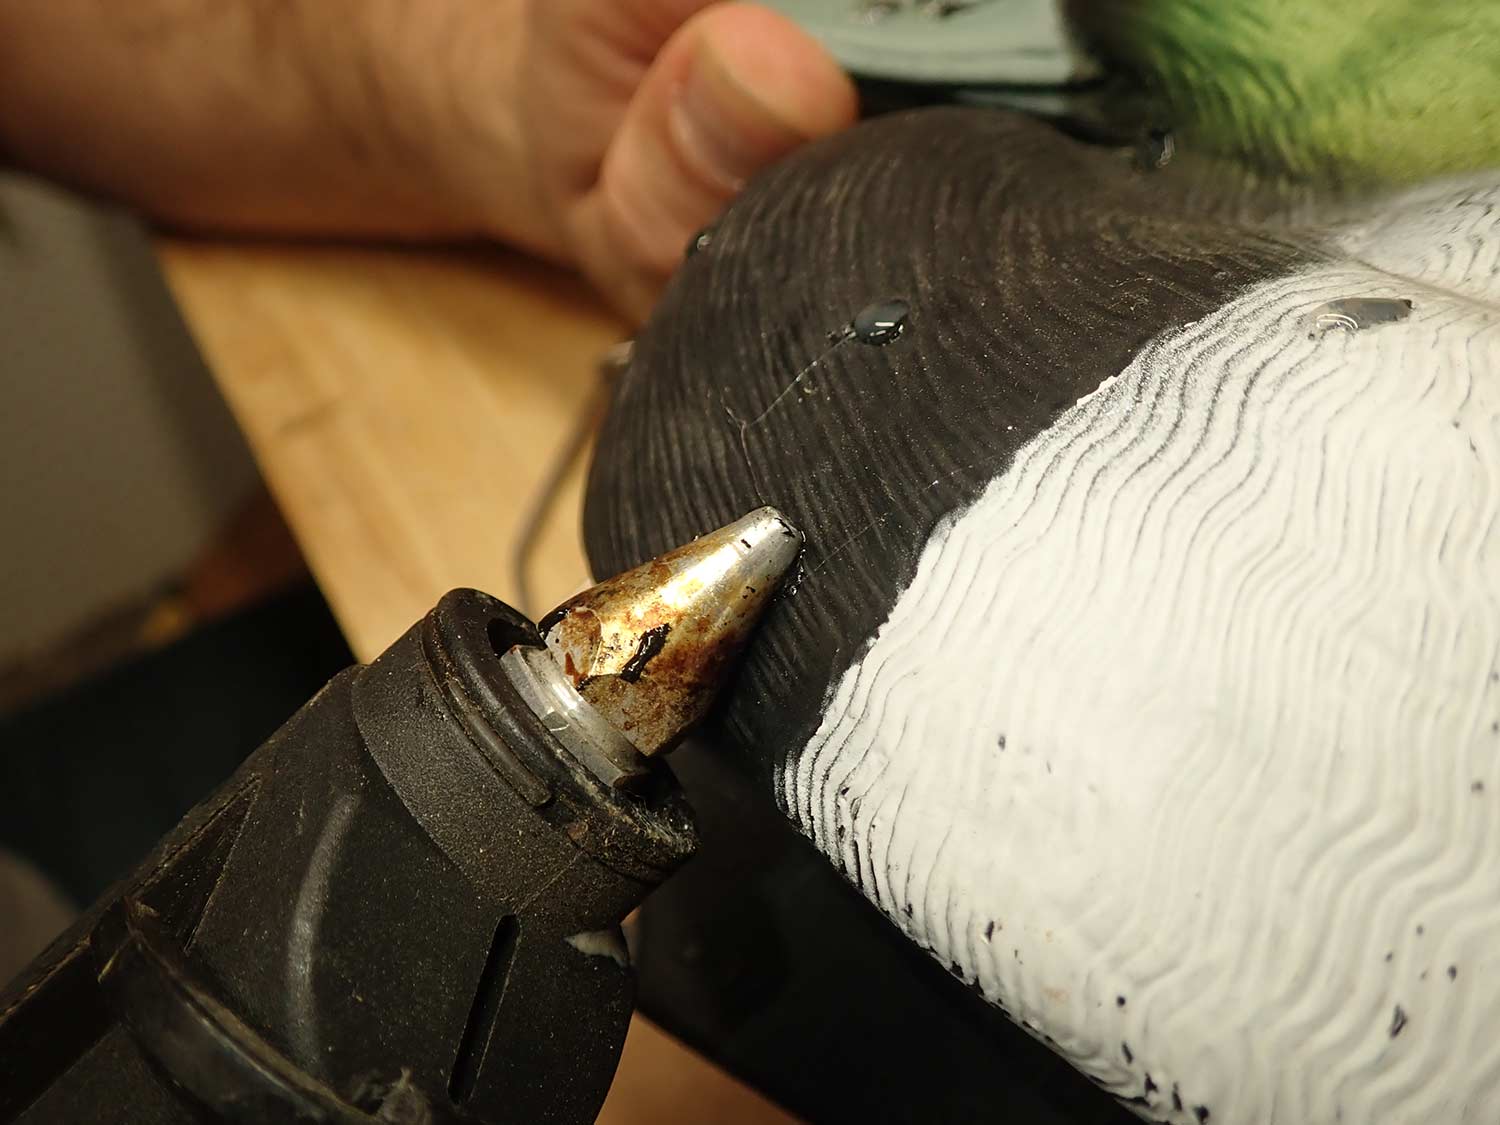 Hot glue gun being used as a decoy repair.